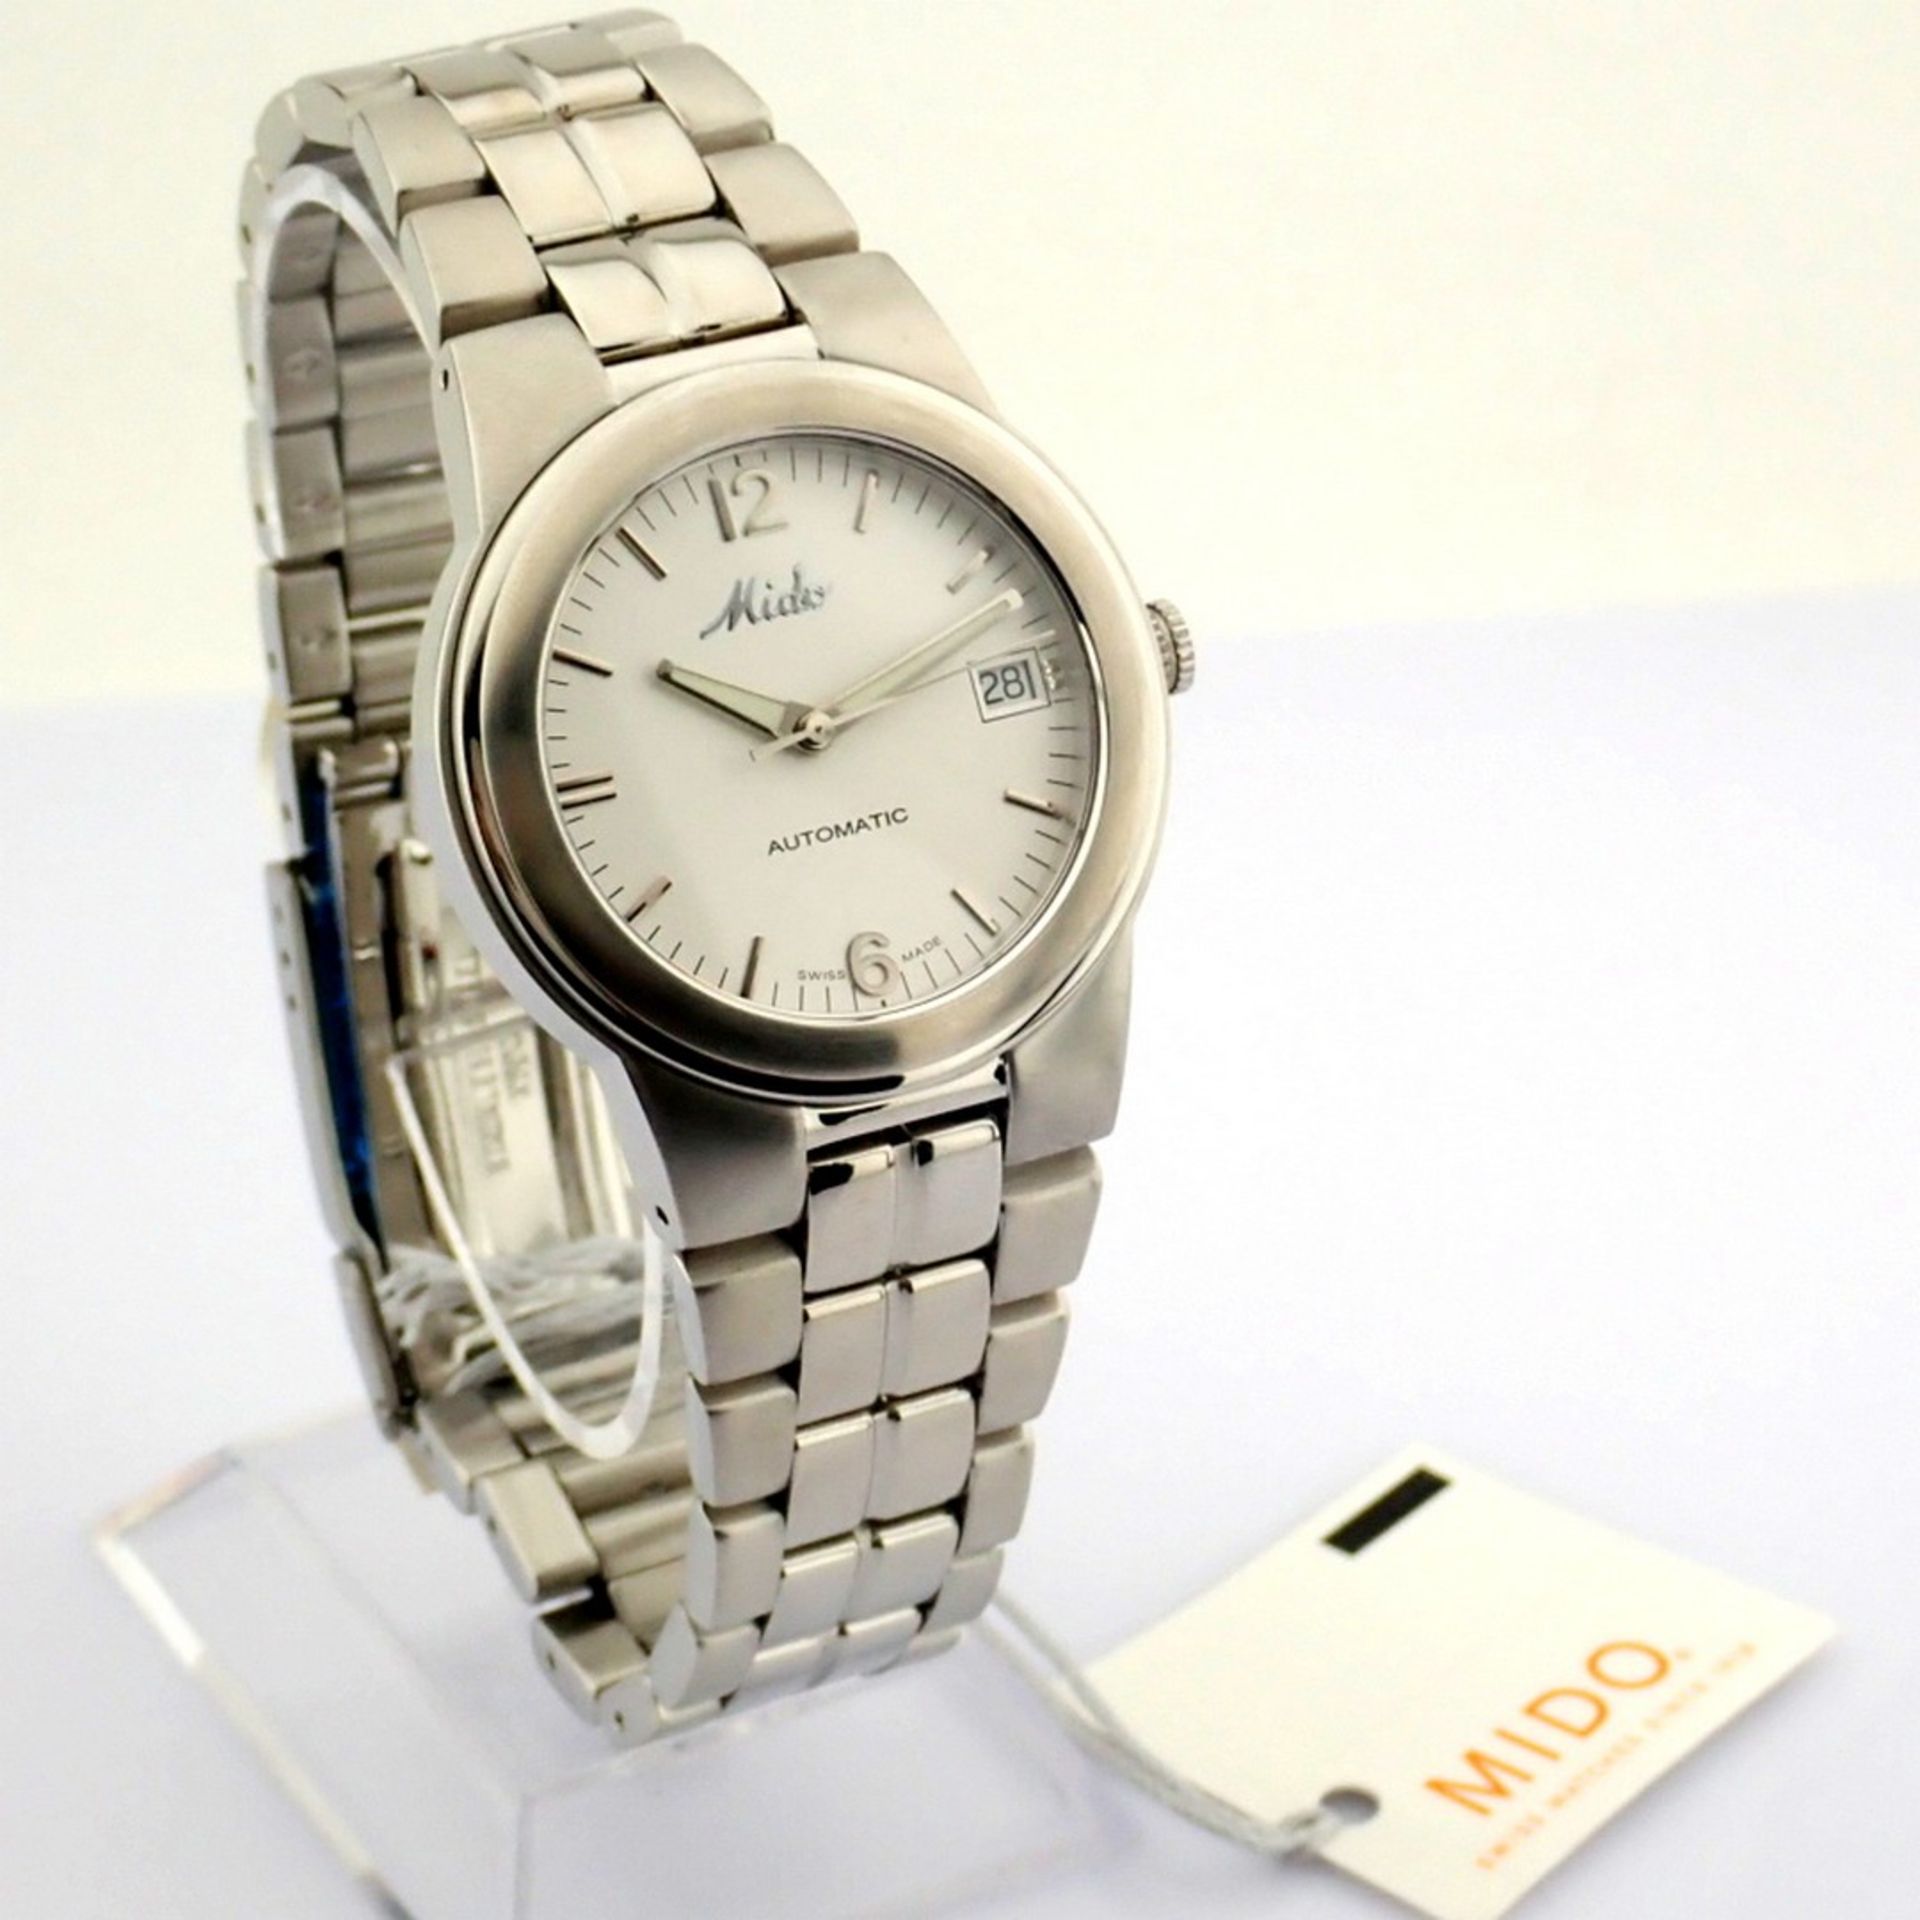 Mido / Ocean Star Aquadura (Brand New) - Gentlemen's Steel Wristwatch - Image 10 of 12